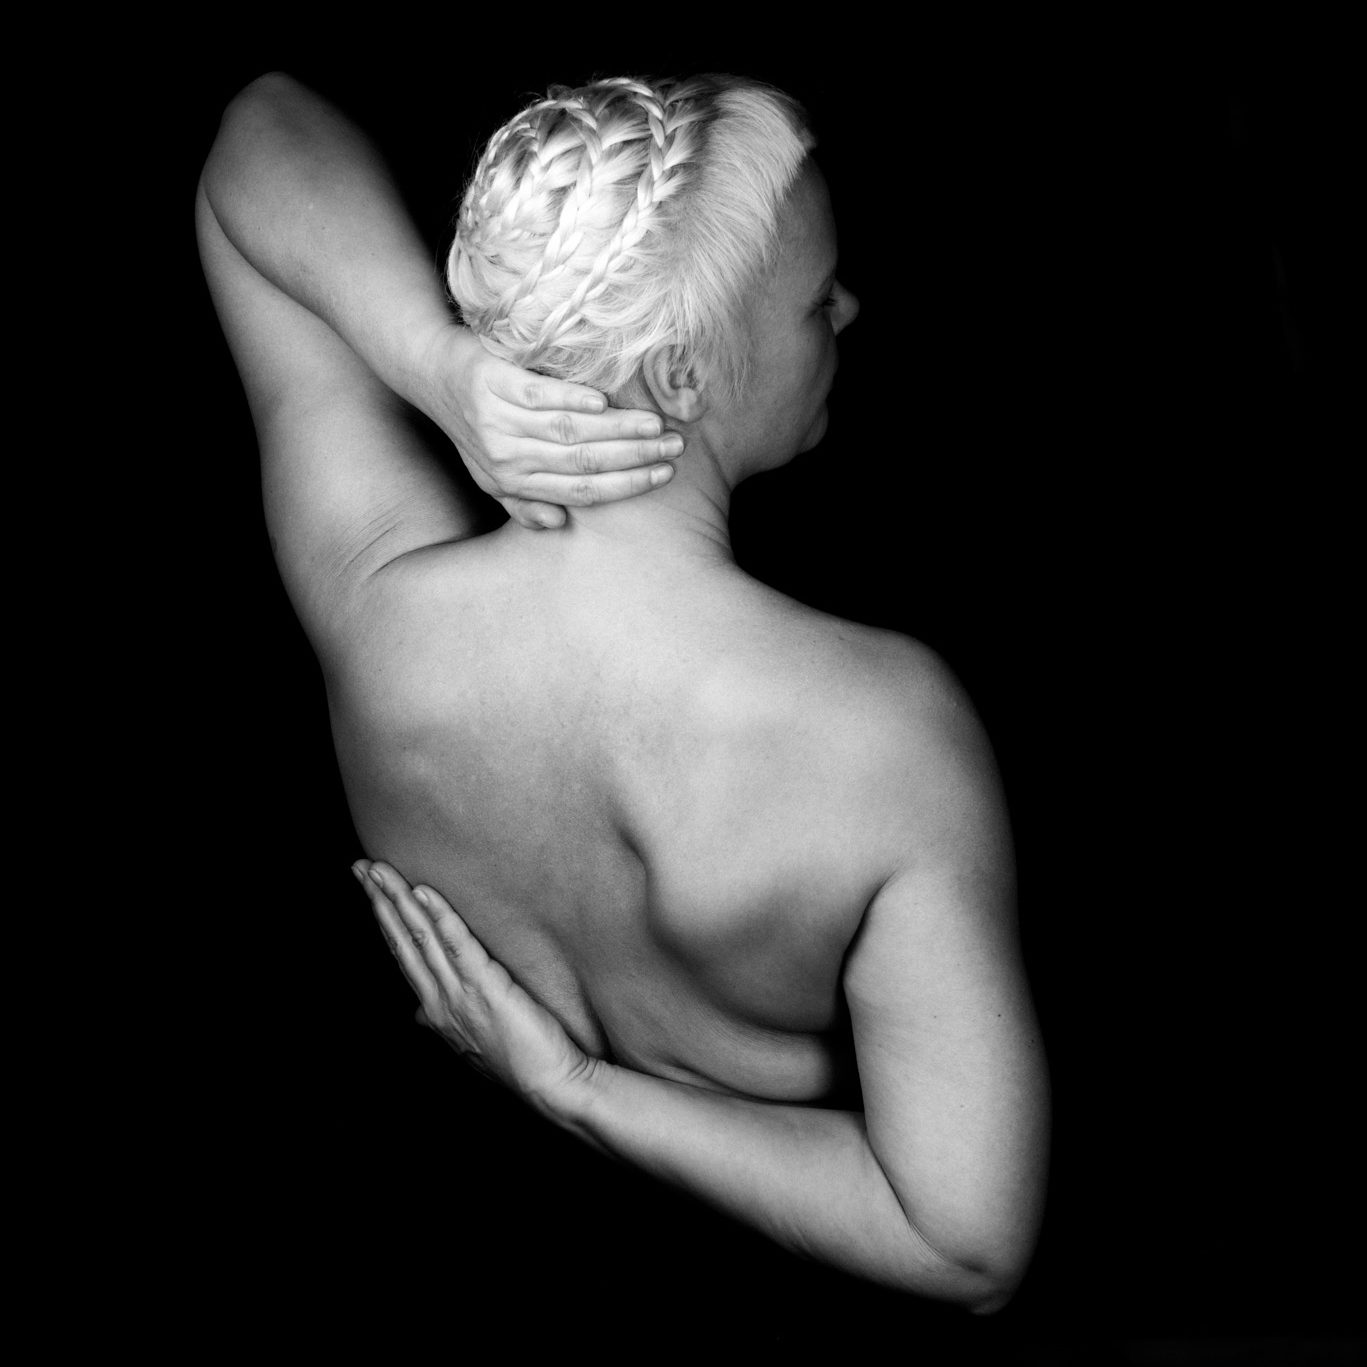 Portraitfoto von einer Frau von Hinten. Wir sehen ihren Rücken und ihre Arme. Ihre Haare sind eigenwillig zu einem runden Zopf geflochten. Ihre linke Hand hält ihren nacken, der rechte arm ist hinter dem Rücken verschränkt.